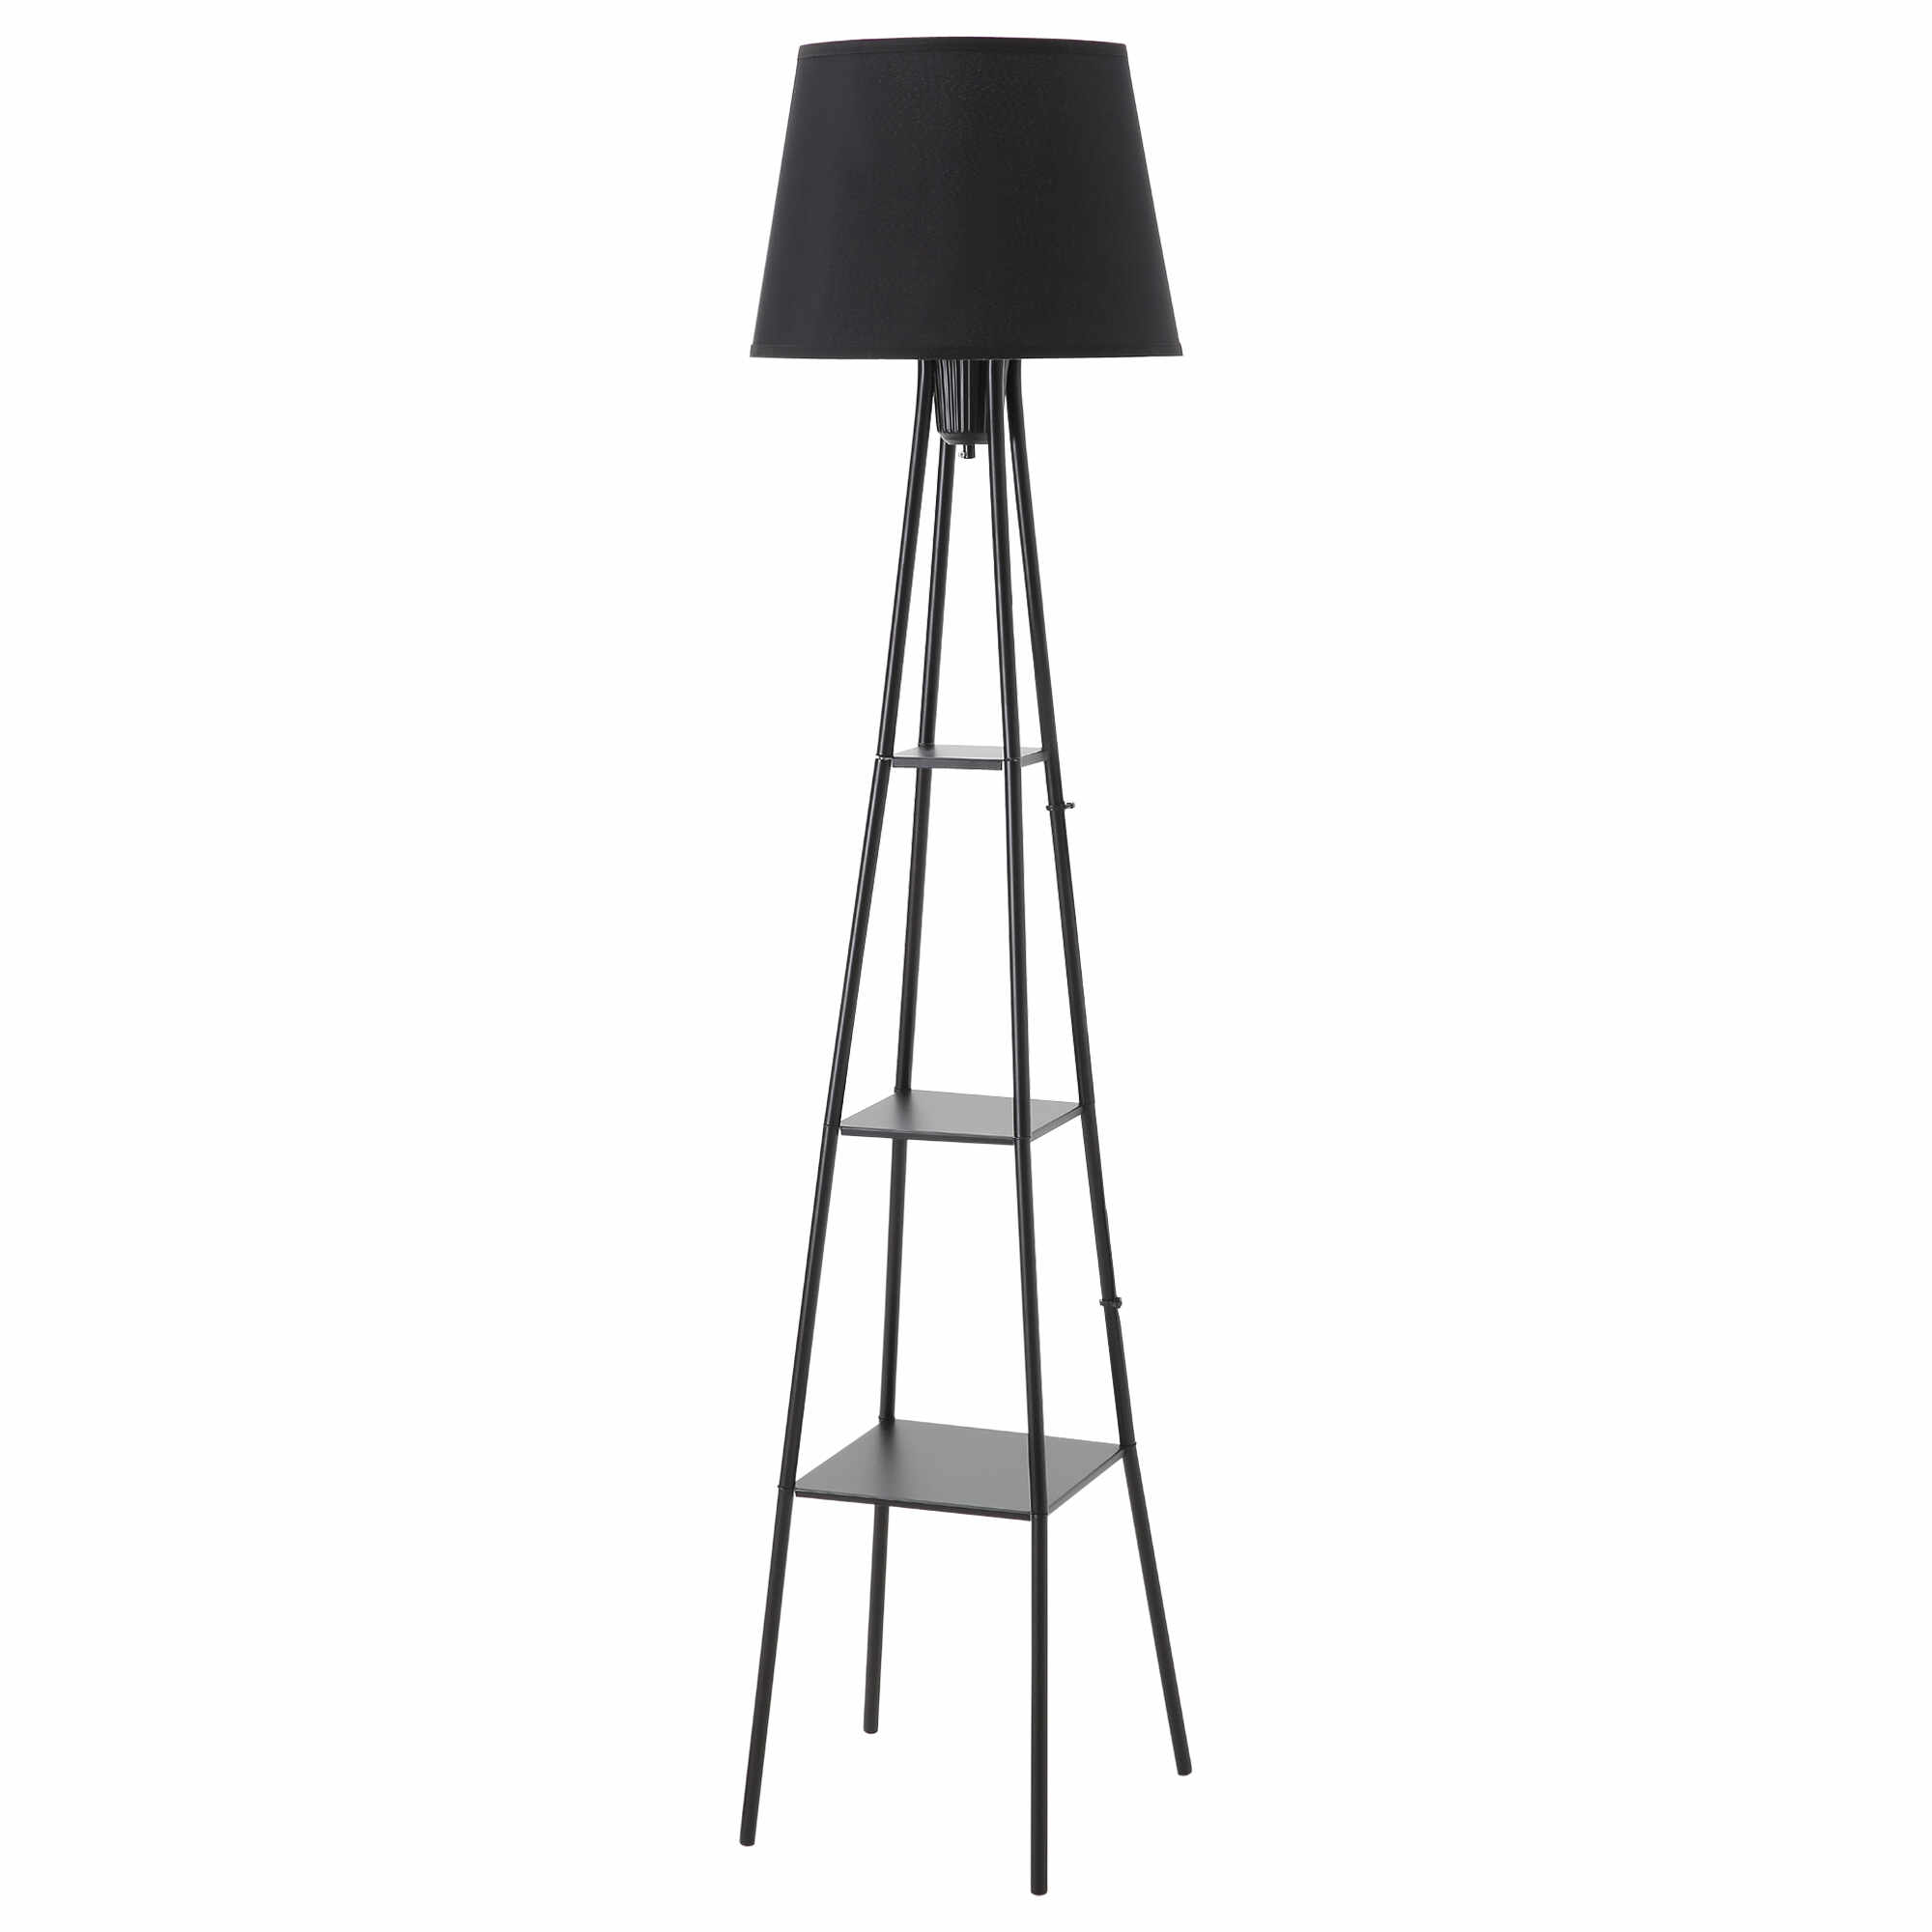 HOMCOM Lampa de Podea Design cu 3 Rafturi si Intrerupator cu Pedala, Dulie E27 si Structura din Metal, 35x35x173cm, Negru